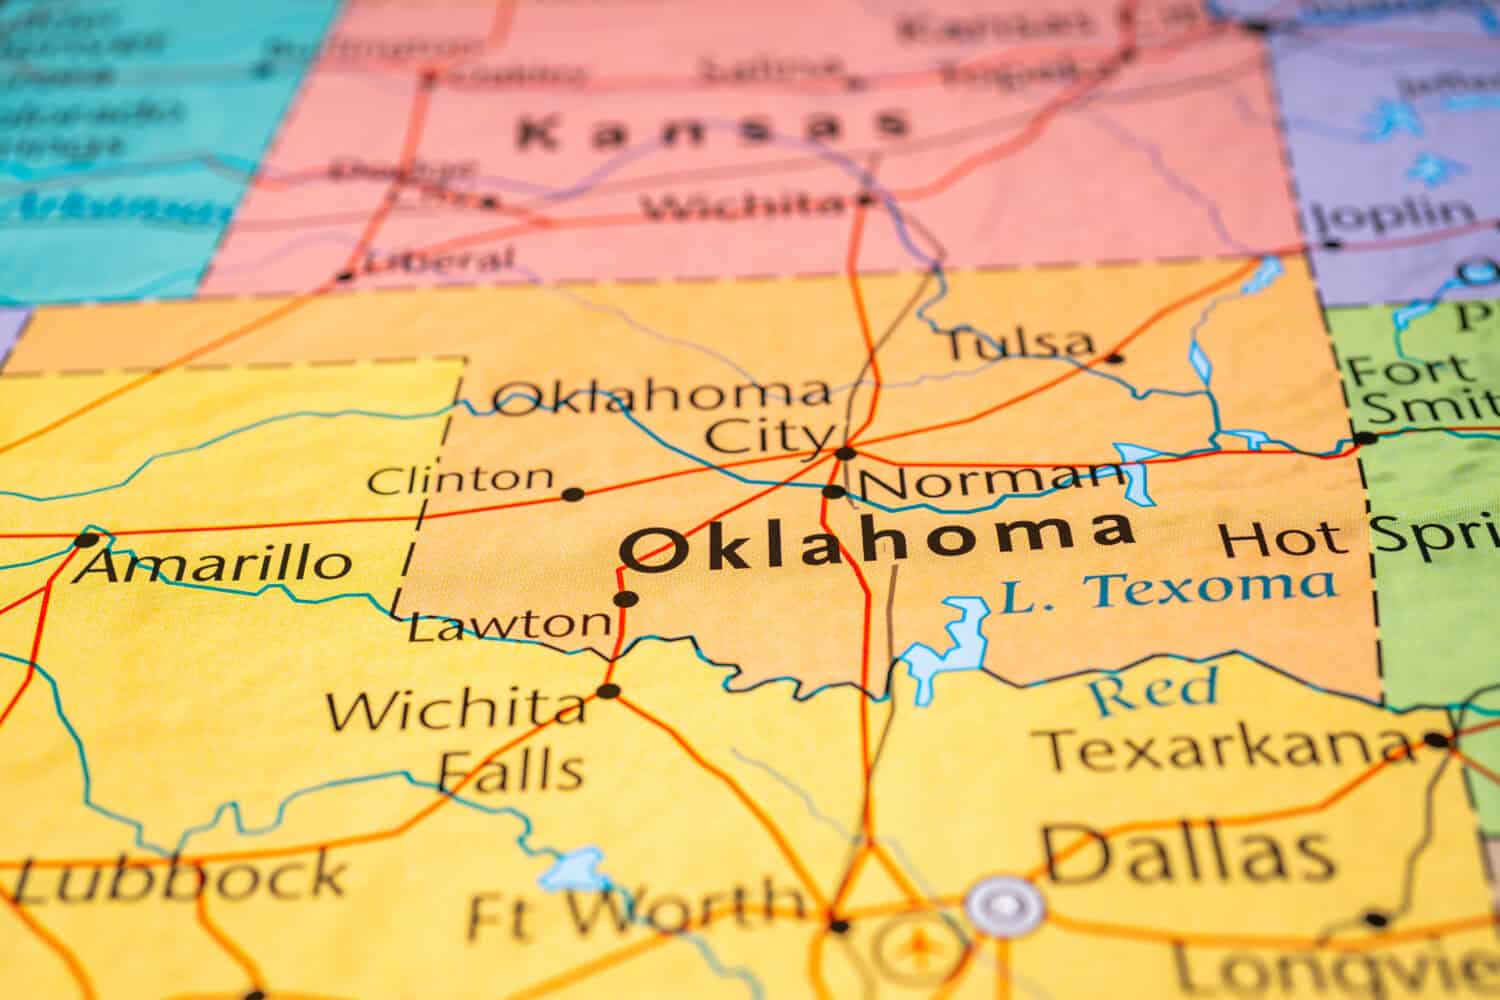 Oklahoma on the map of USA